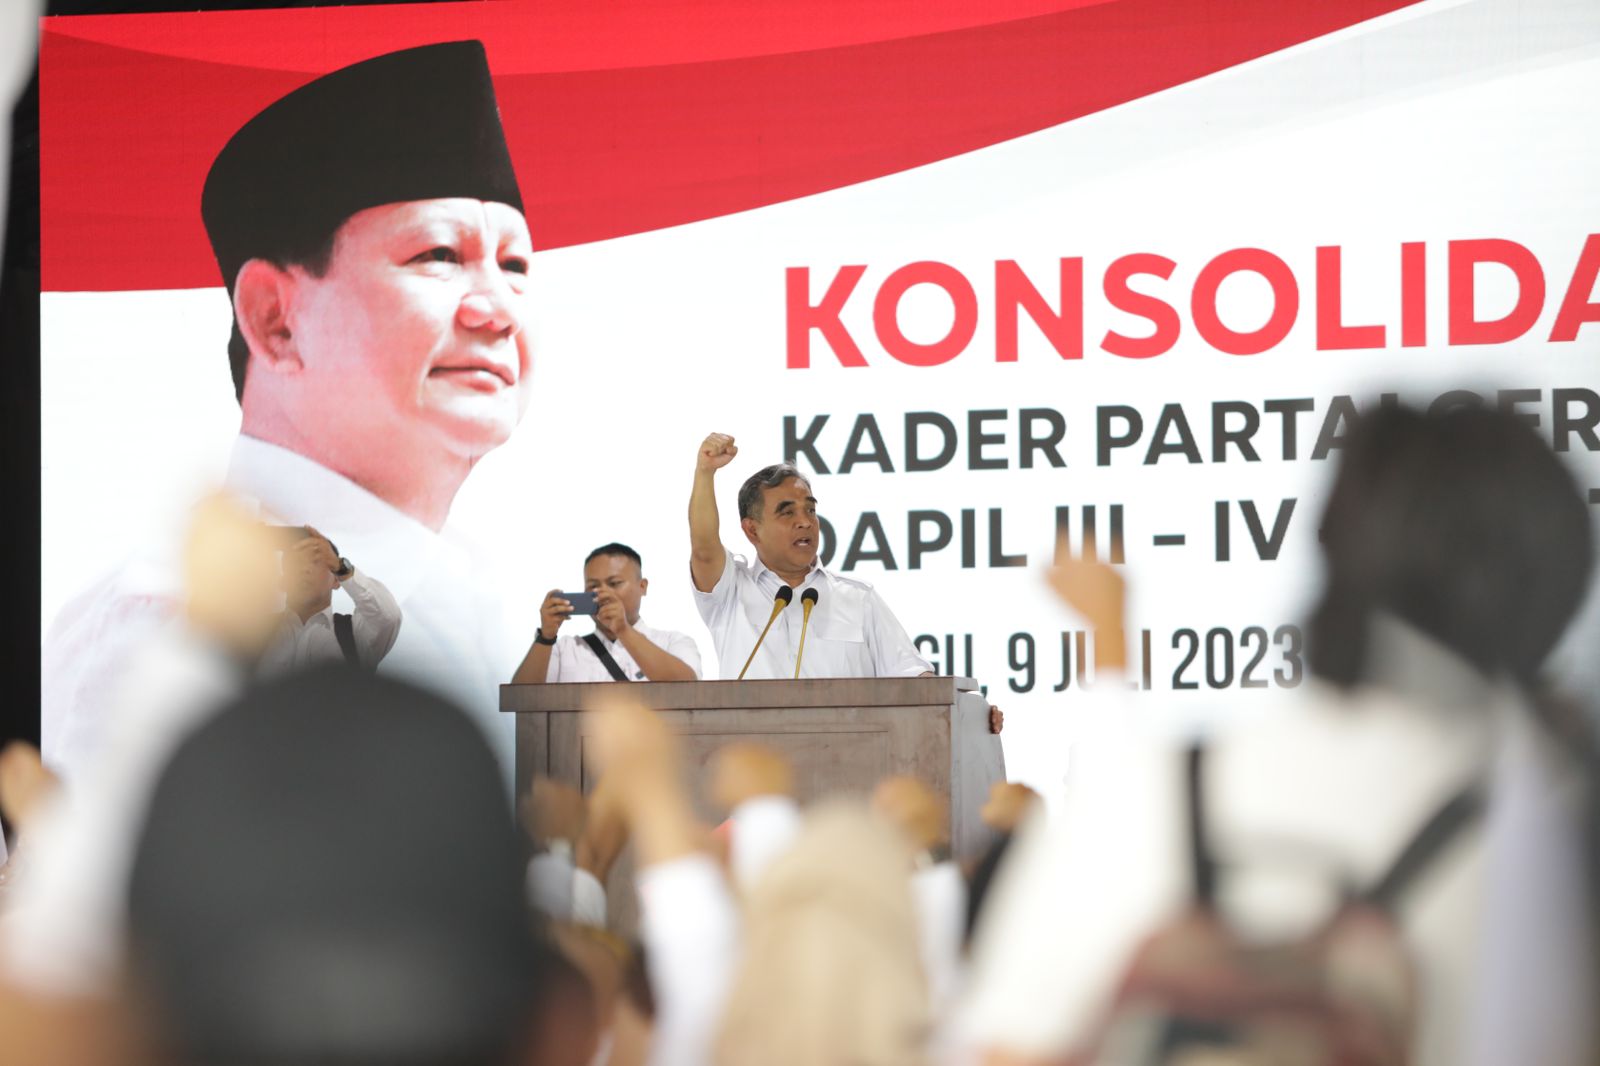 Prabowo: Rakyat Ingin Lihat Pemimpinnya Bersaing dengan Sejuk